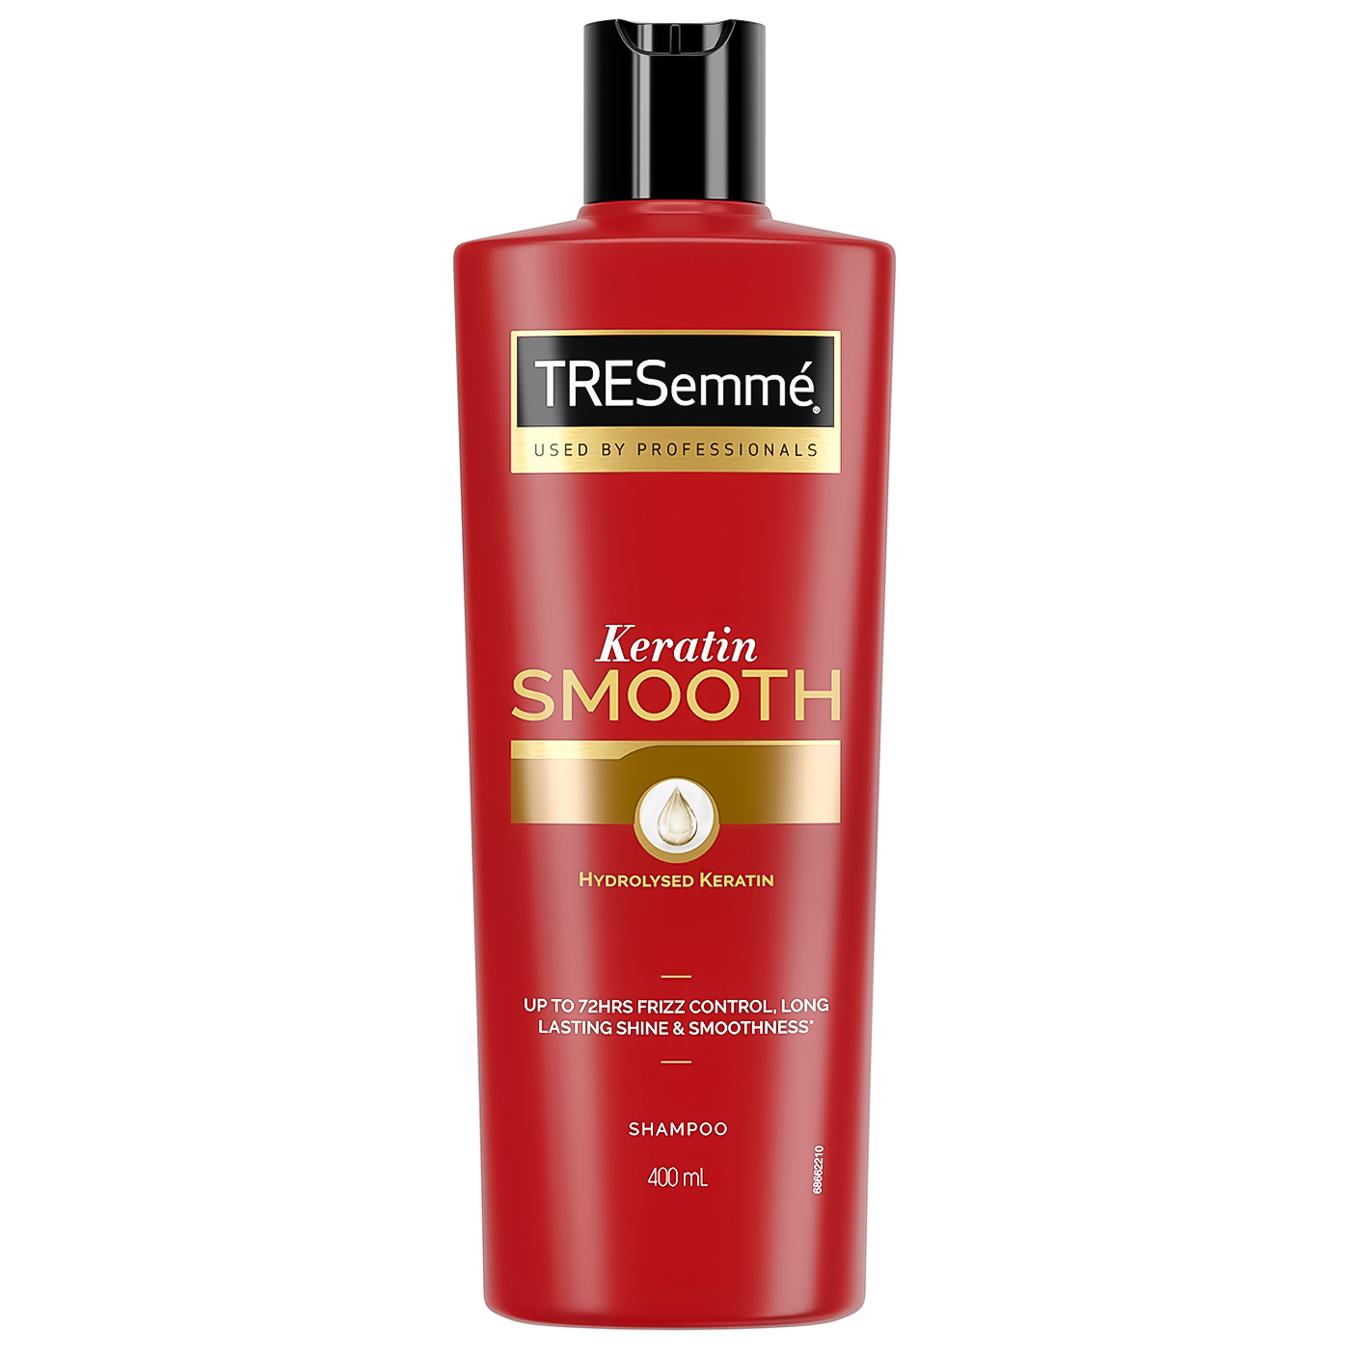 Tresemme Keratin Smooth smoothing shampoo 400ml